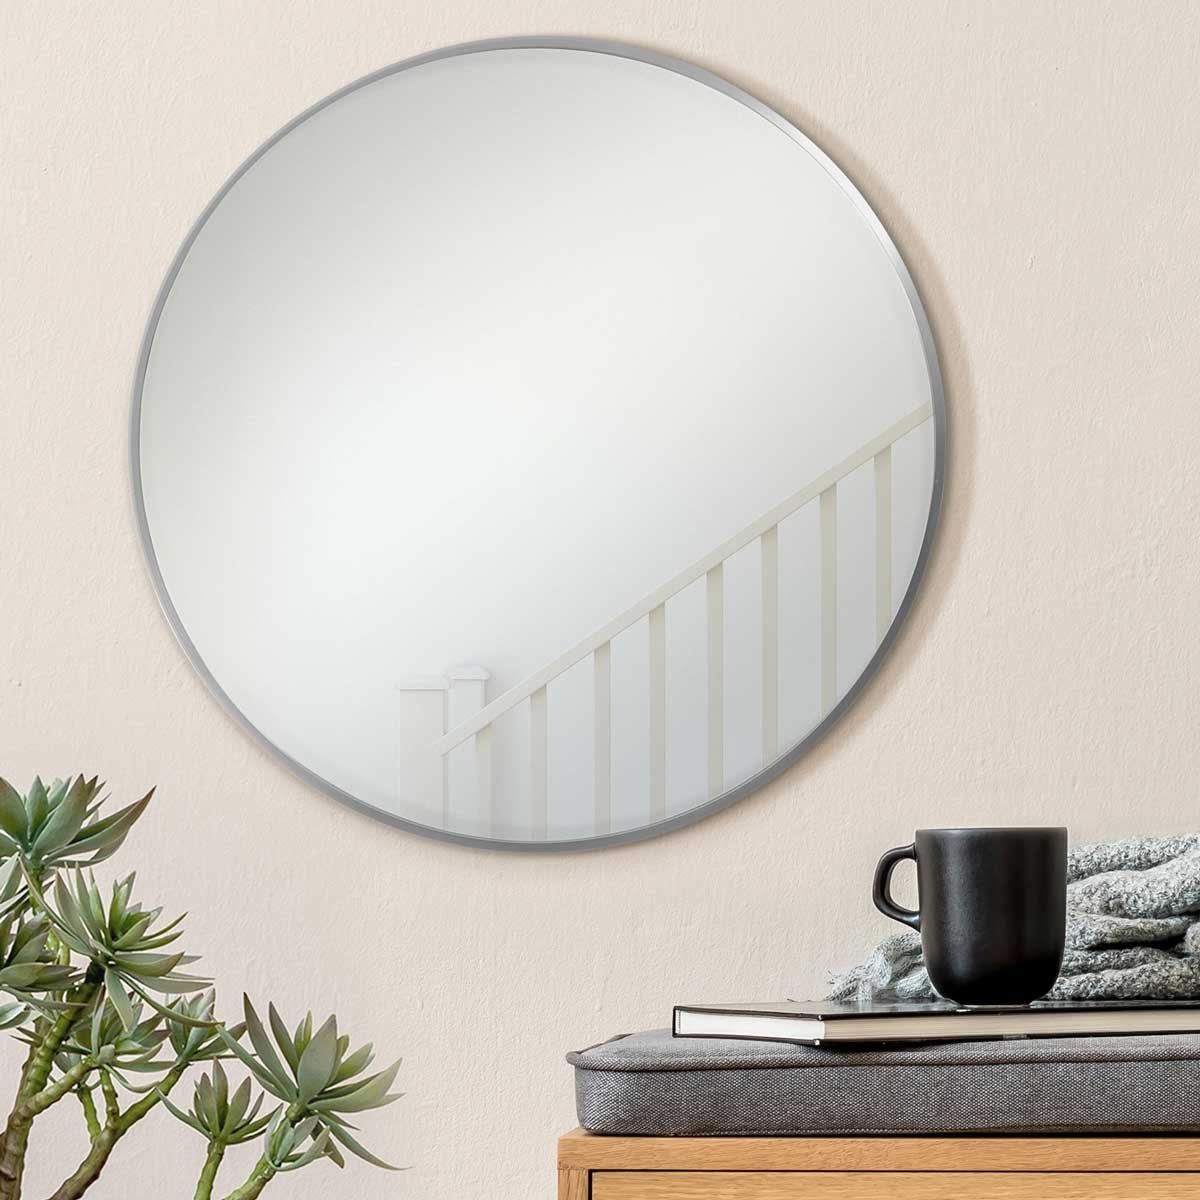 PHOTOLINI Spiegel rund mit Metallrahmen Silber, eleganter Wandspiegel, schmaler Rahmen | Spiegel